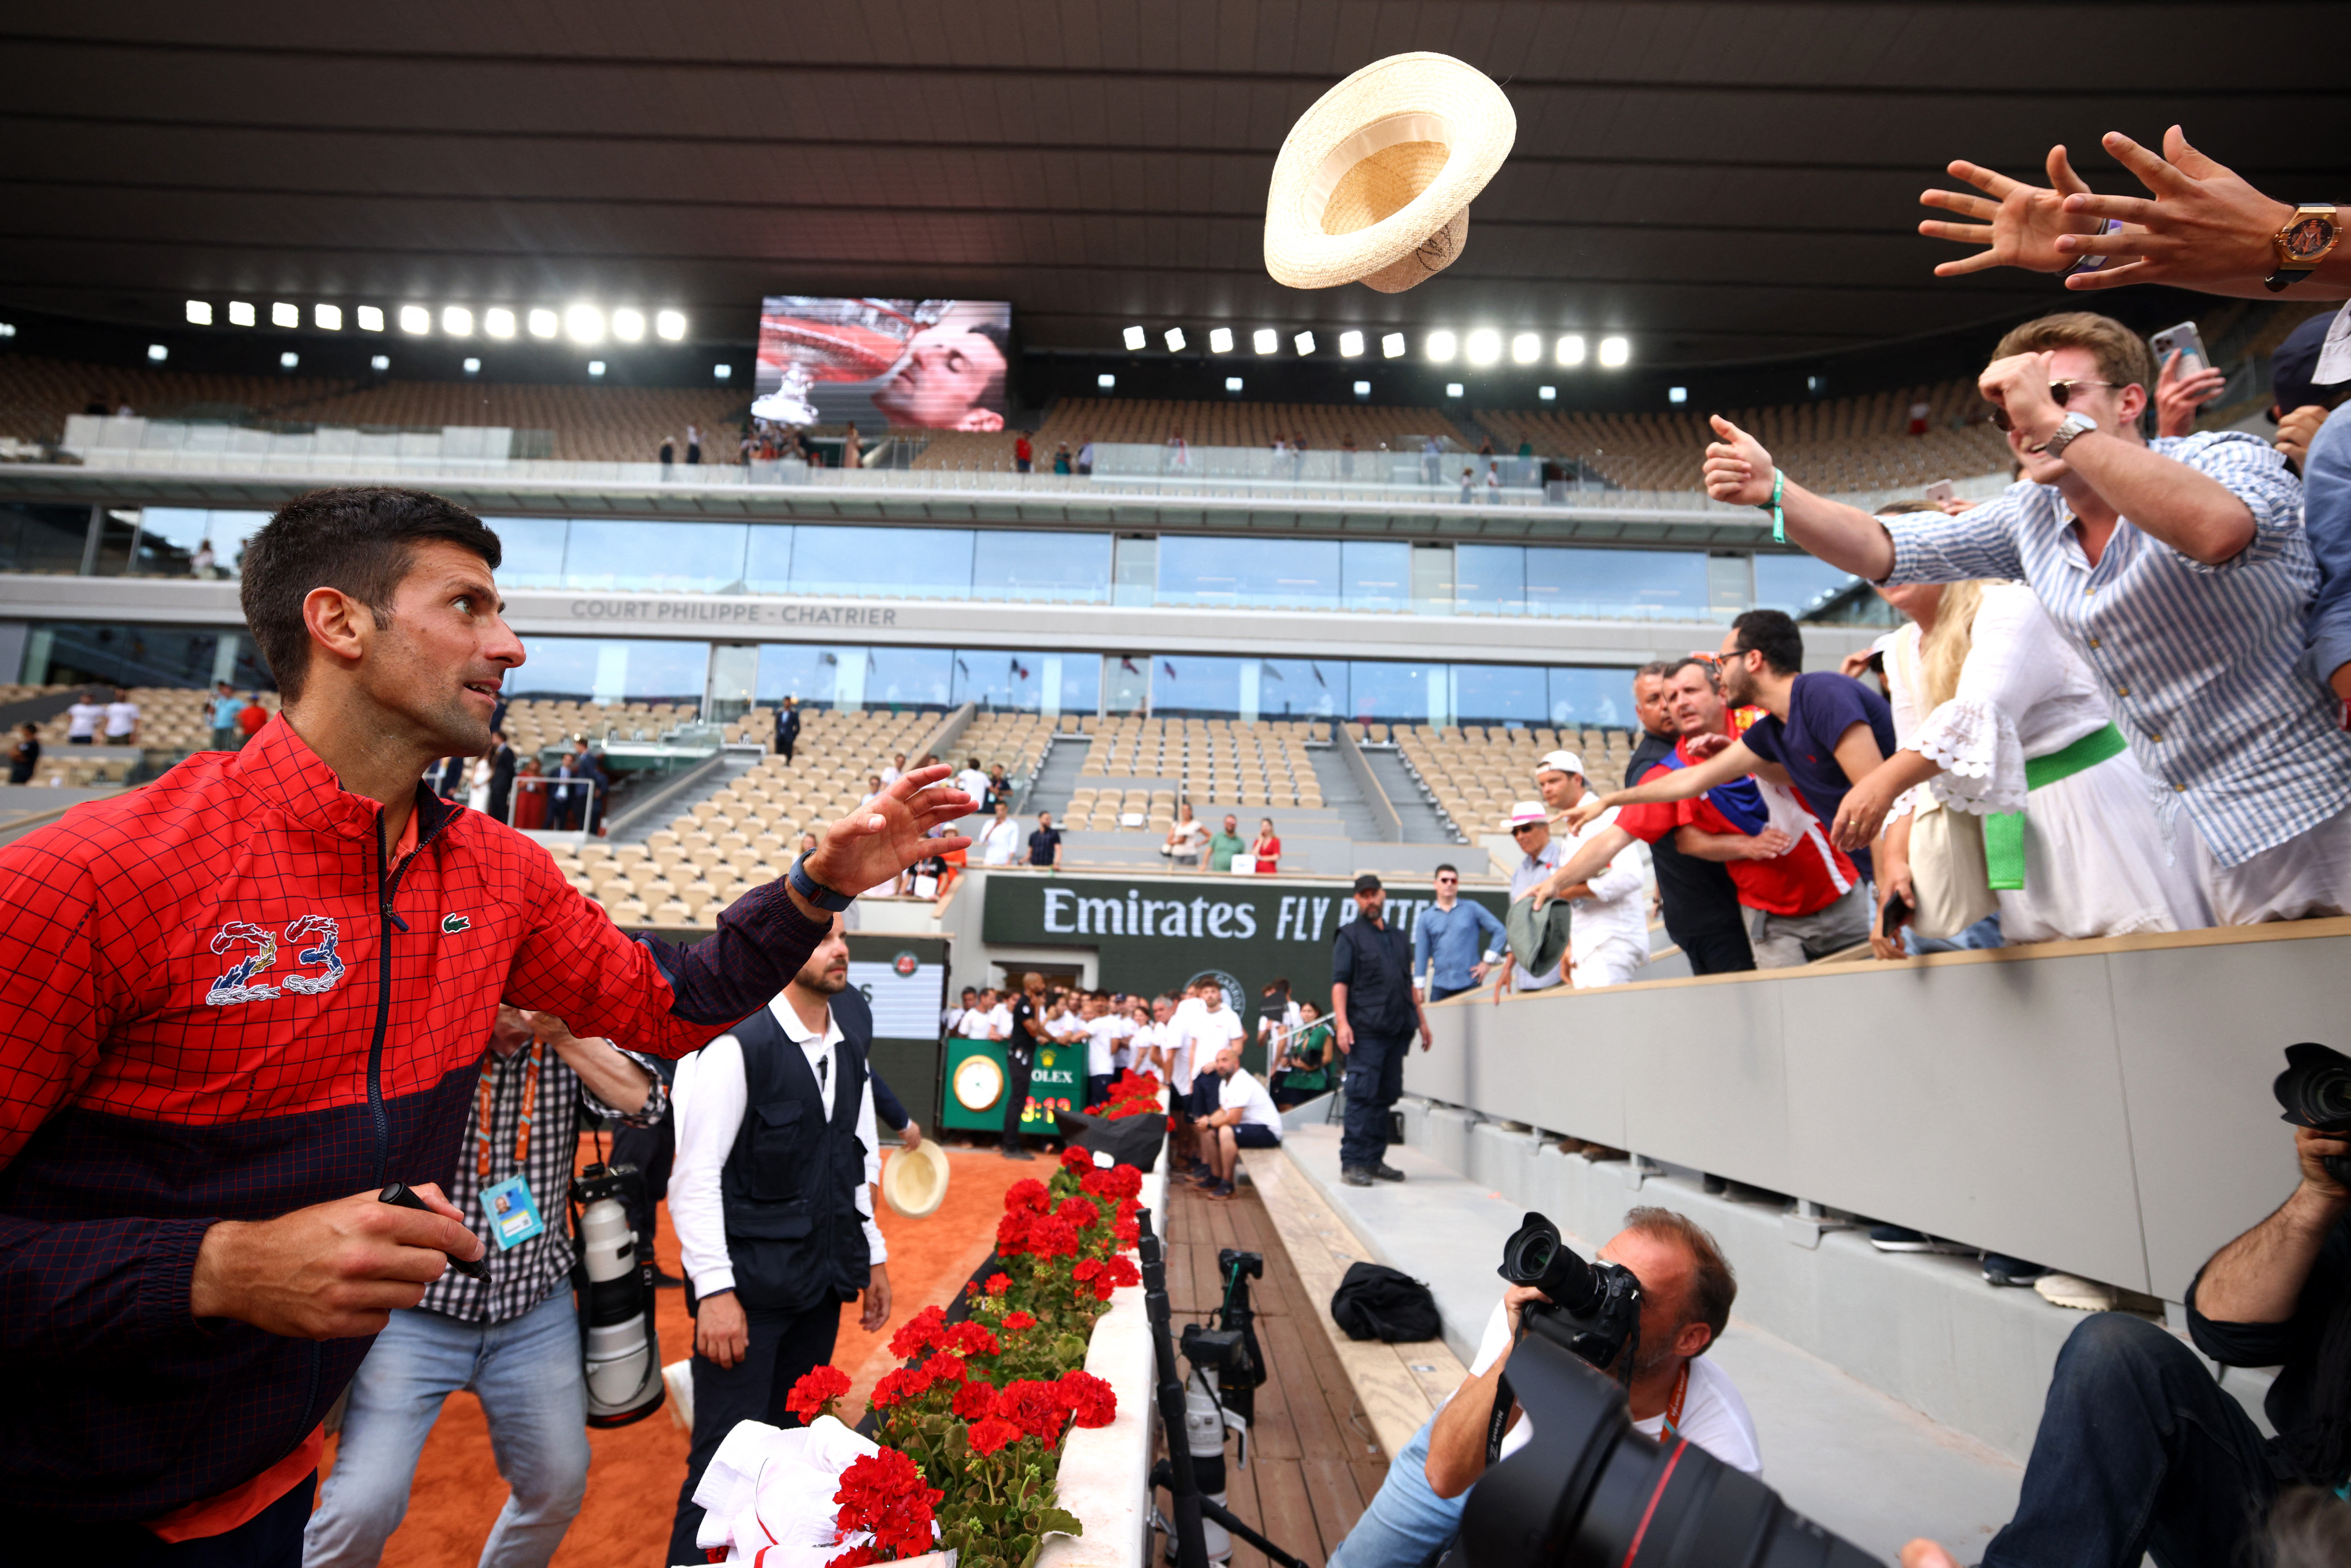 Djokovic é tricampeão em Roland Garros e chega a 23 Grand Slams, tênis